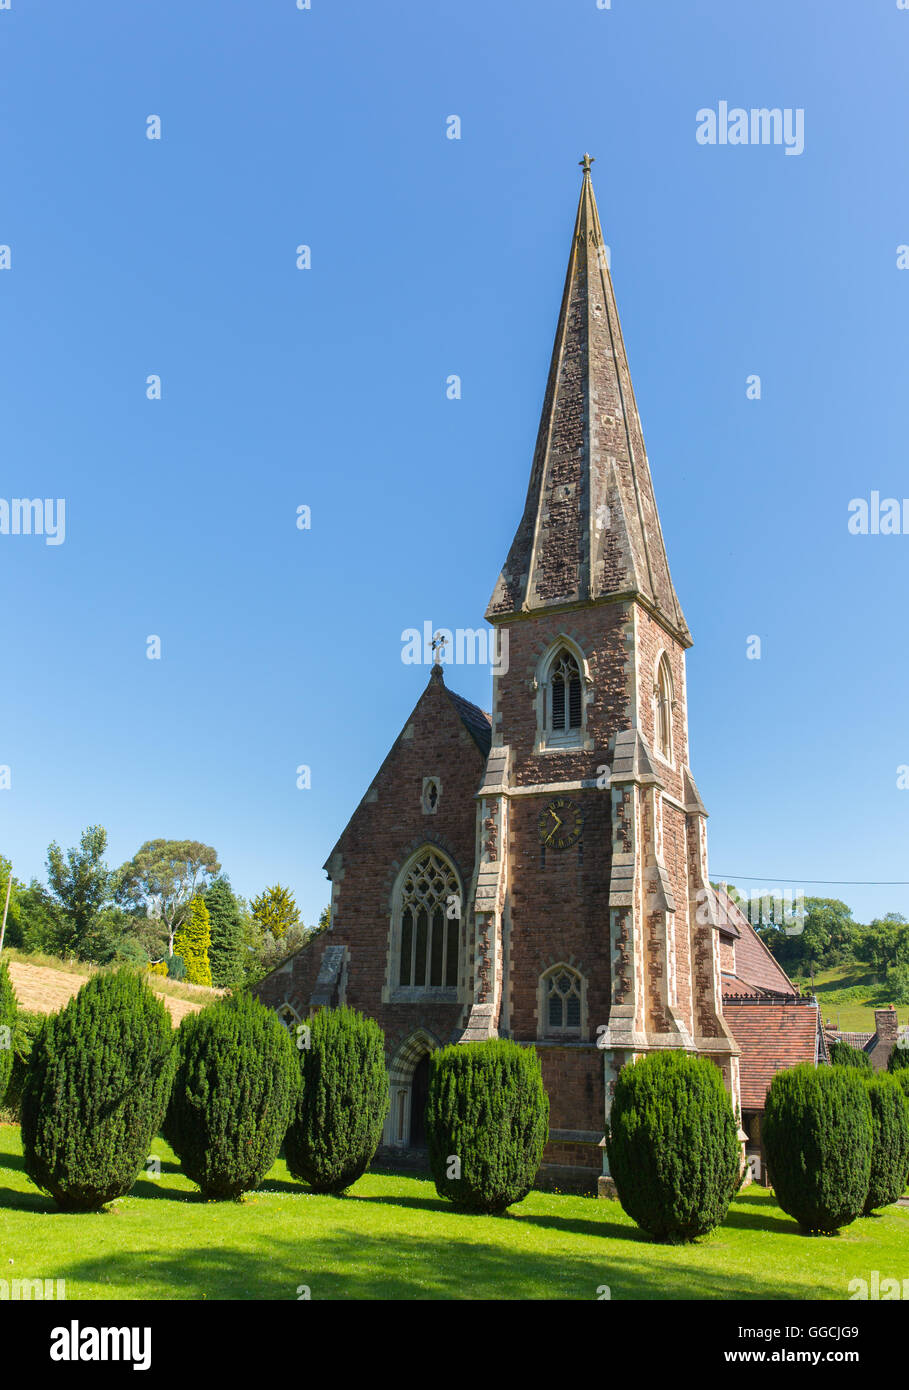 L'église St Pierre Clearwell Forêt de Dean West Gloucestershire England uk exemple de milieu du 19ème siècle de style gothique français Banque D'Images